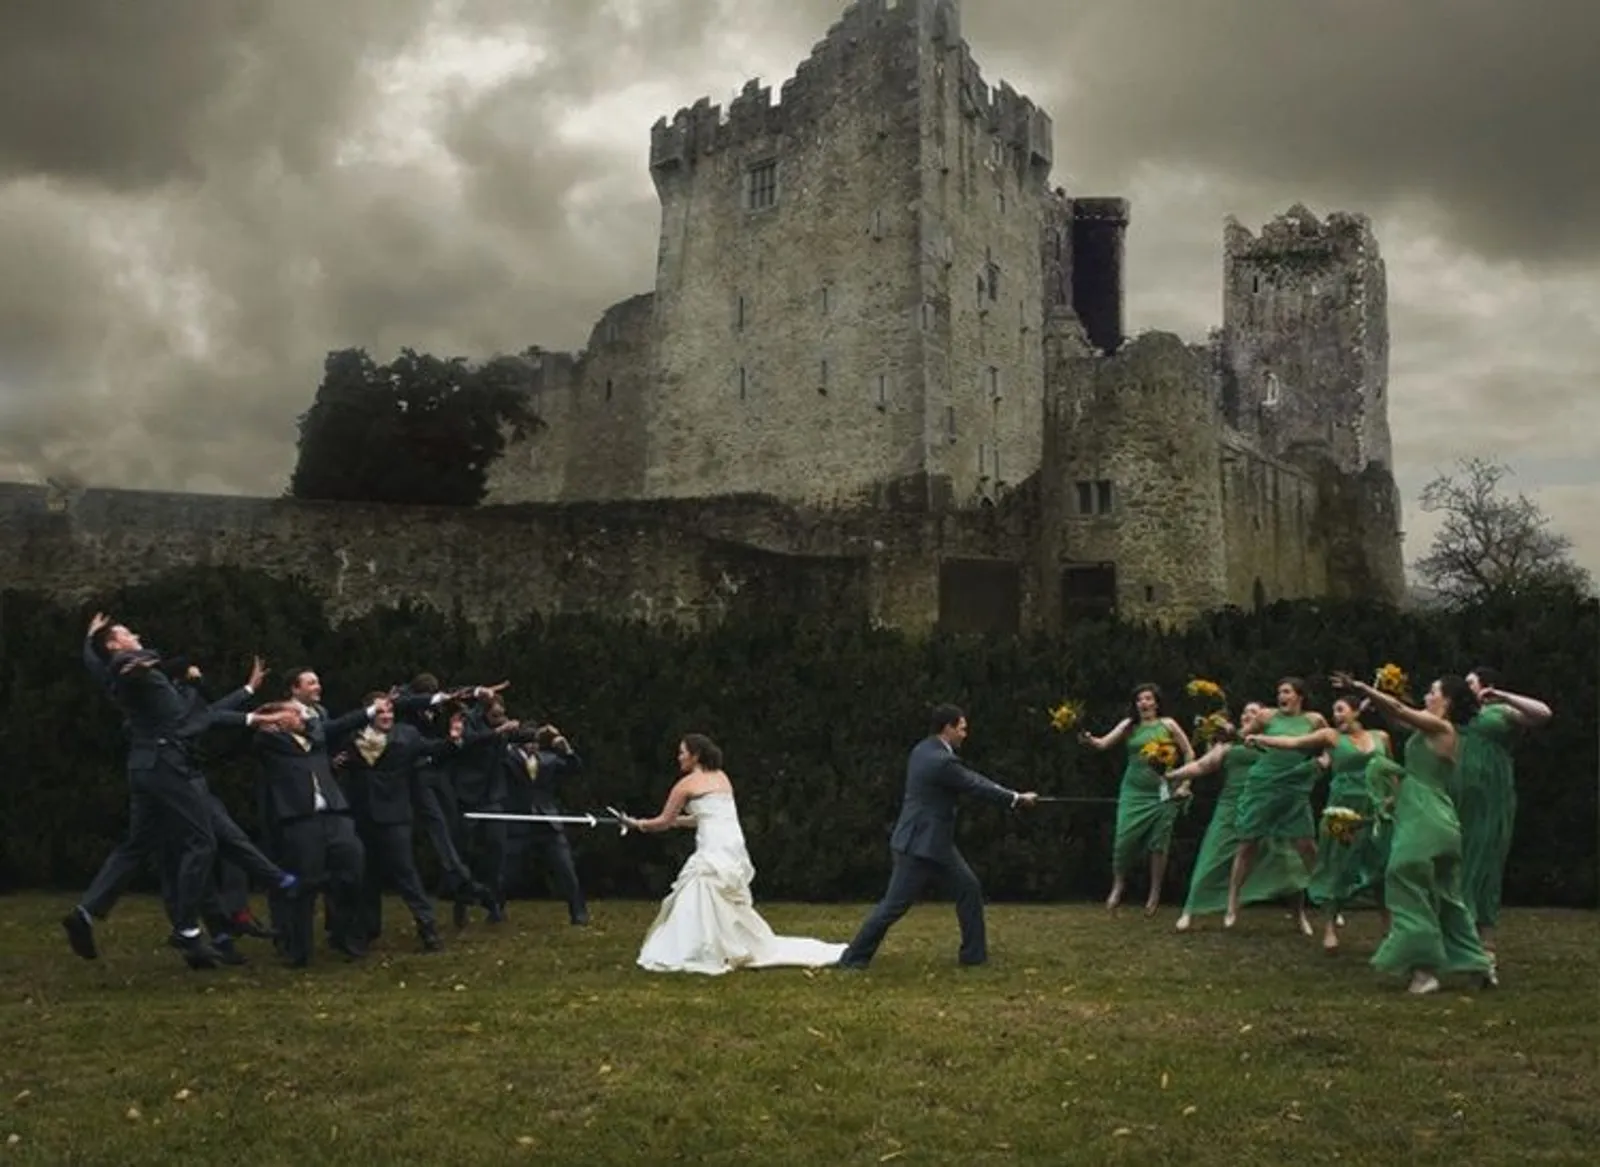 9 Foto Lucu Ini Ungkap Sisi Lain Saat Pernikahan, Bisa Jadi Inspirasi!